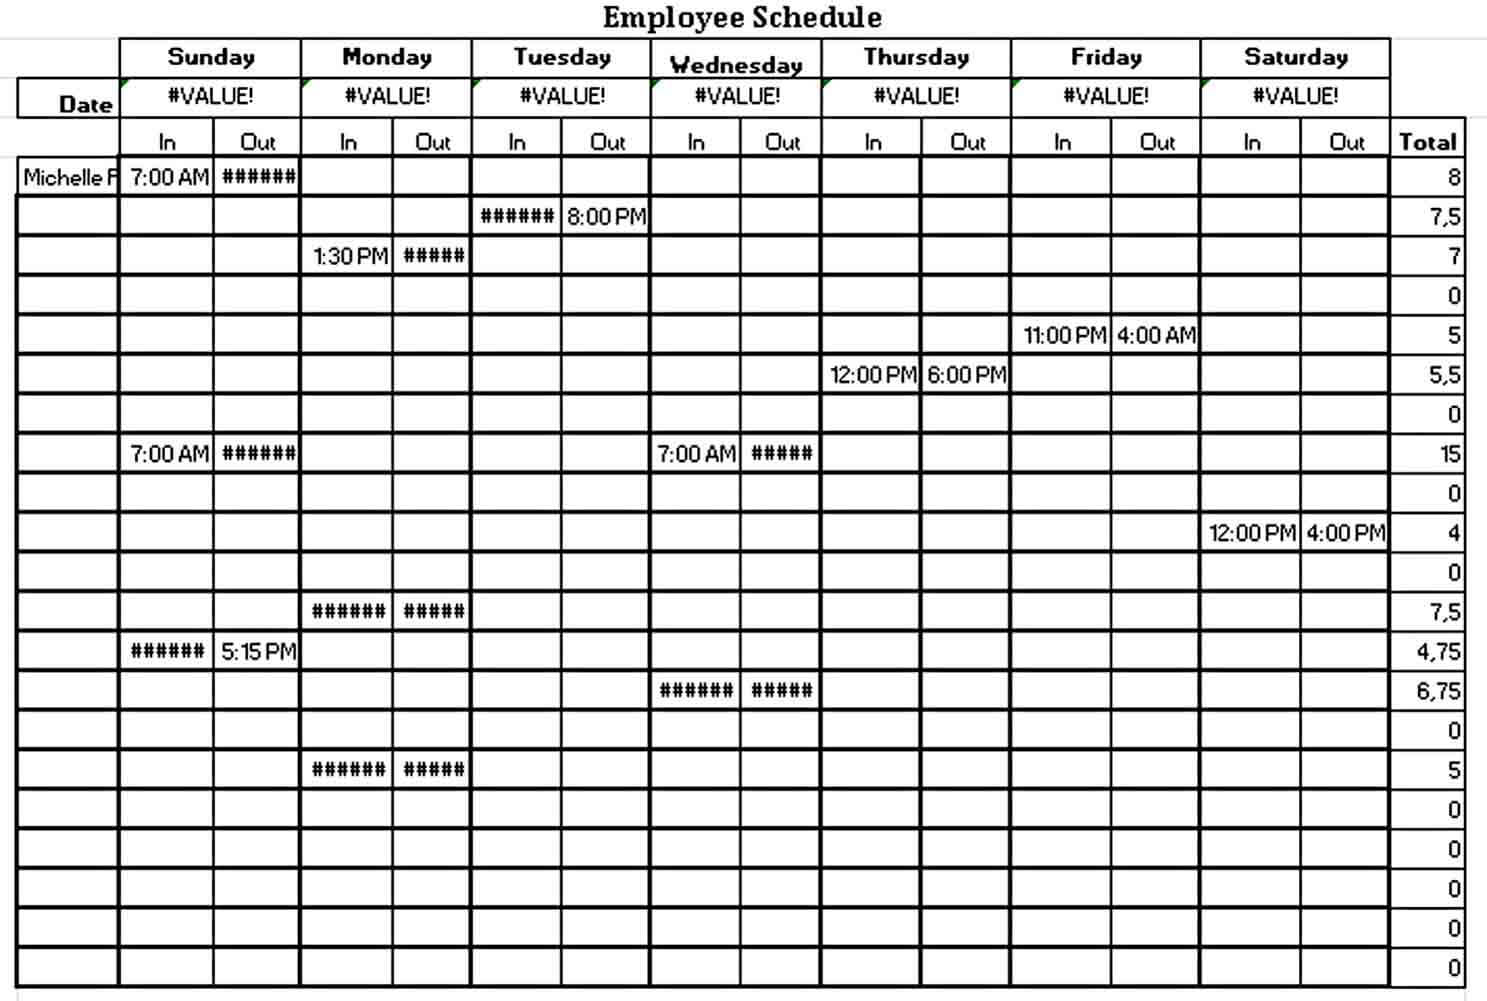 Employee Work Schedule Template Example